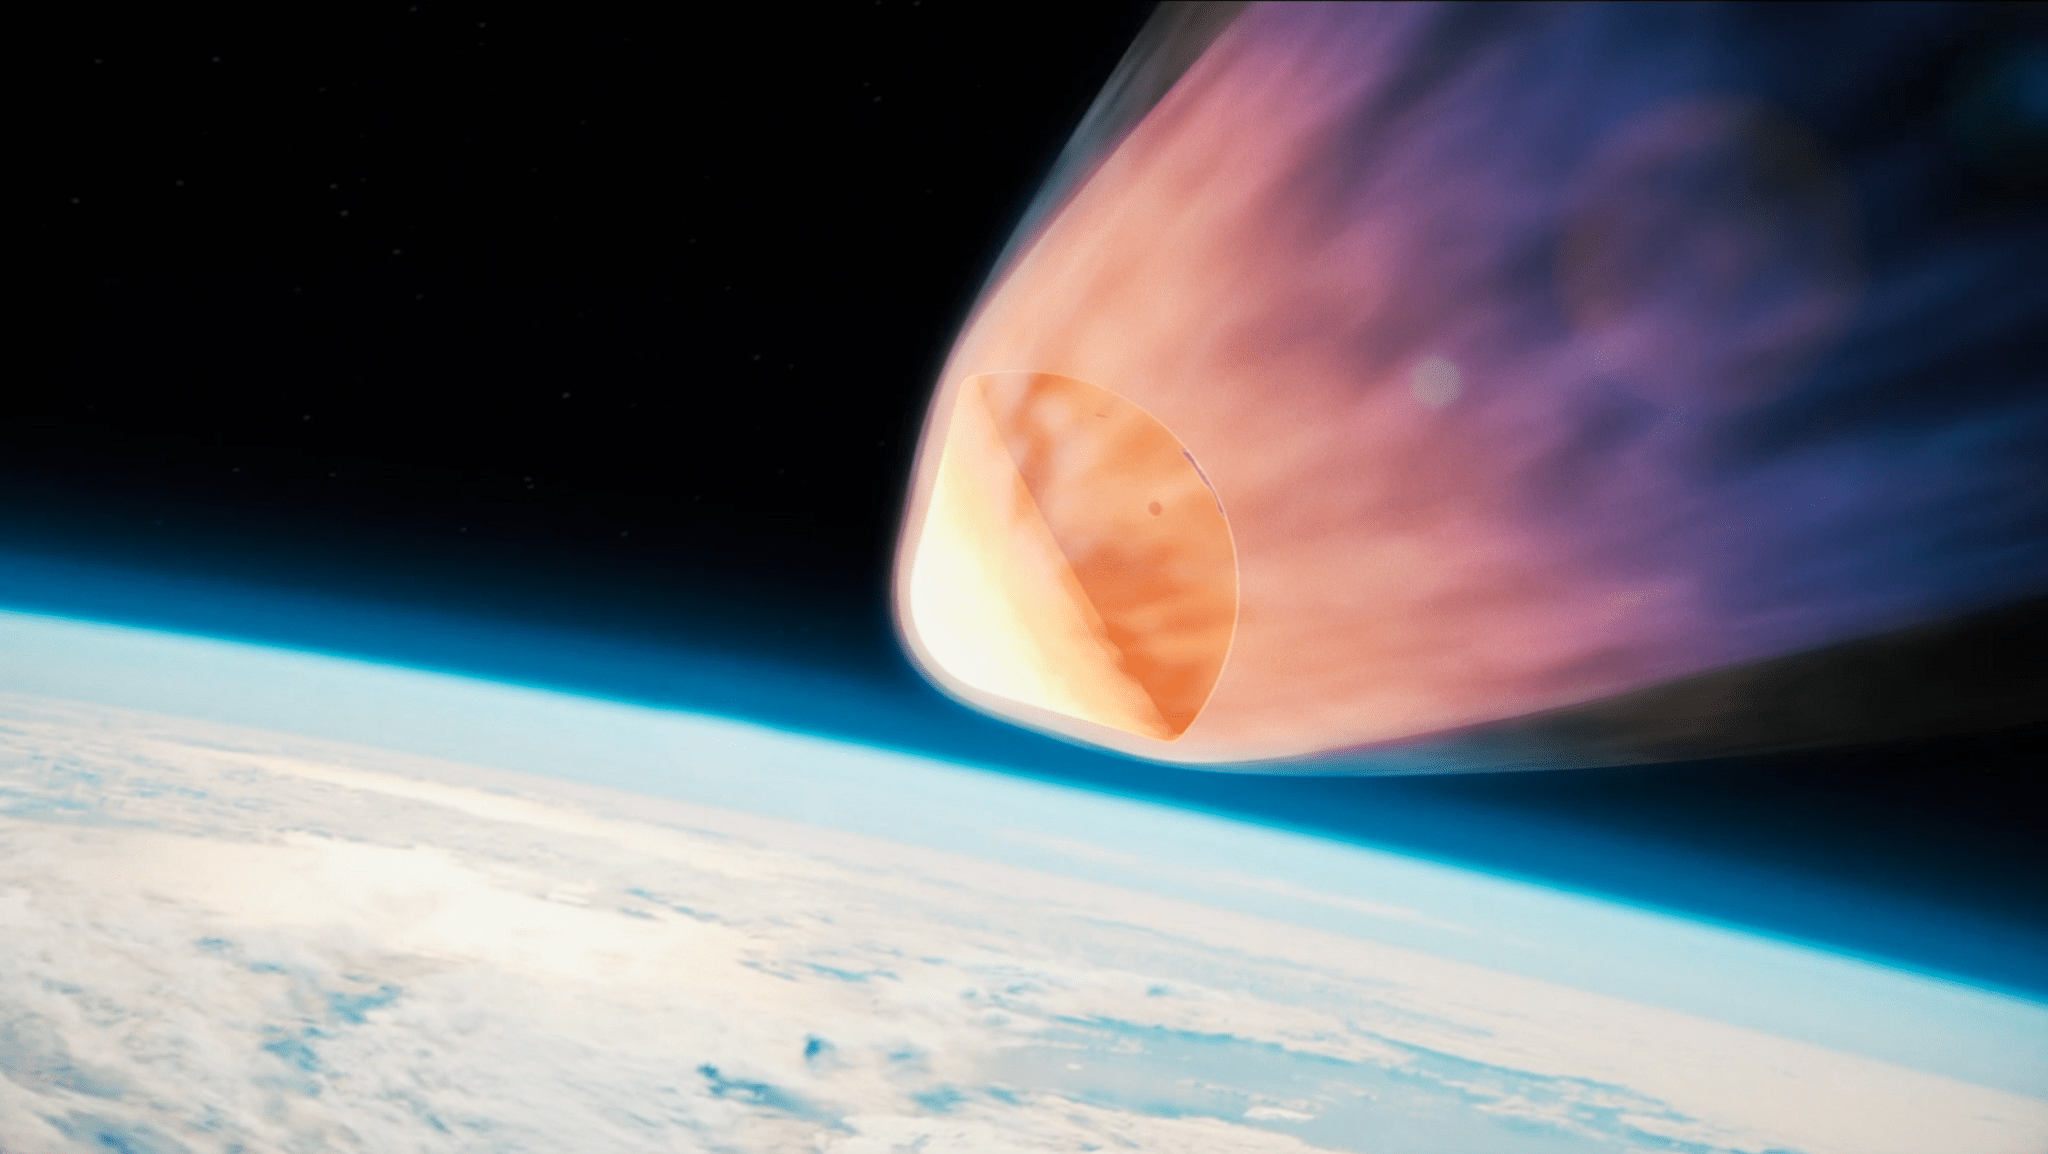 橙色的火焰围绕着一个向地球坠落的顶部形状的太空舱，火焰从太空舱后面涌入黑暗的太空。 下面可以看到云层覆盖的地球。